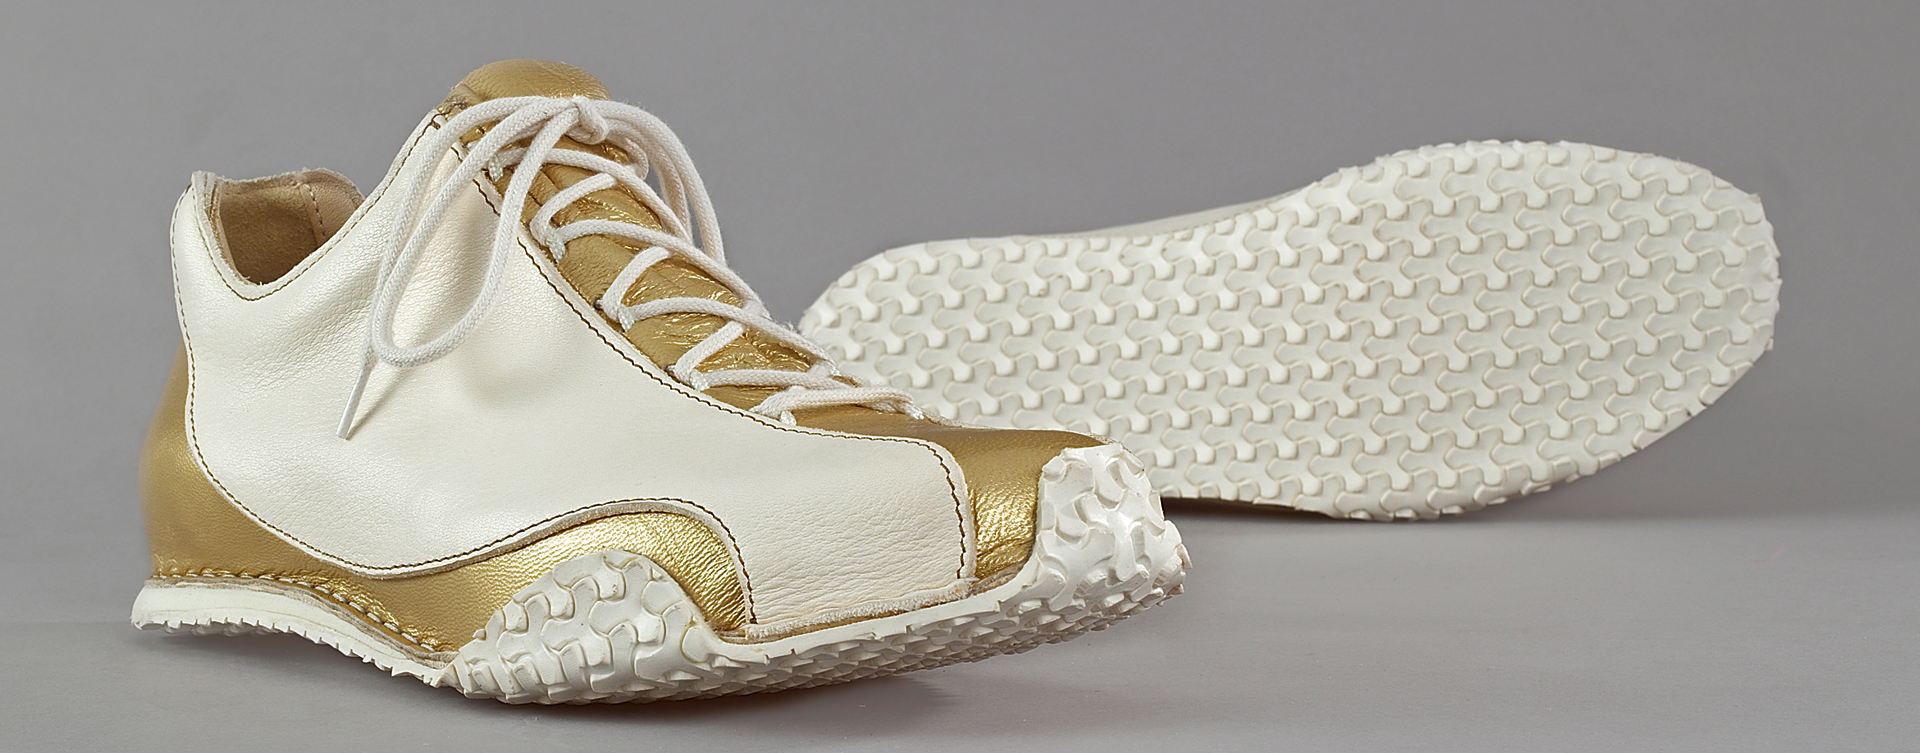 Unsere Vision war es, einen Schuh zu kreieren, der eine harmonische Linienführung mit Elementen eines klassischen Schnür-Sneakers in sich vereinigt. Die geschwungene Silhouette verleiht Inspire ein unverwechselbares Erscheinungsbild.